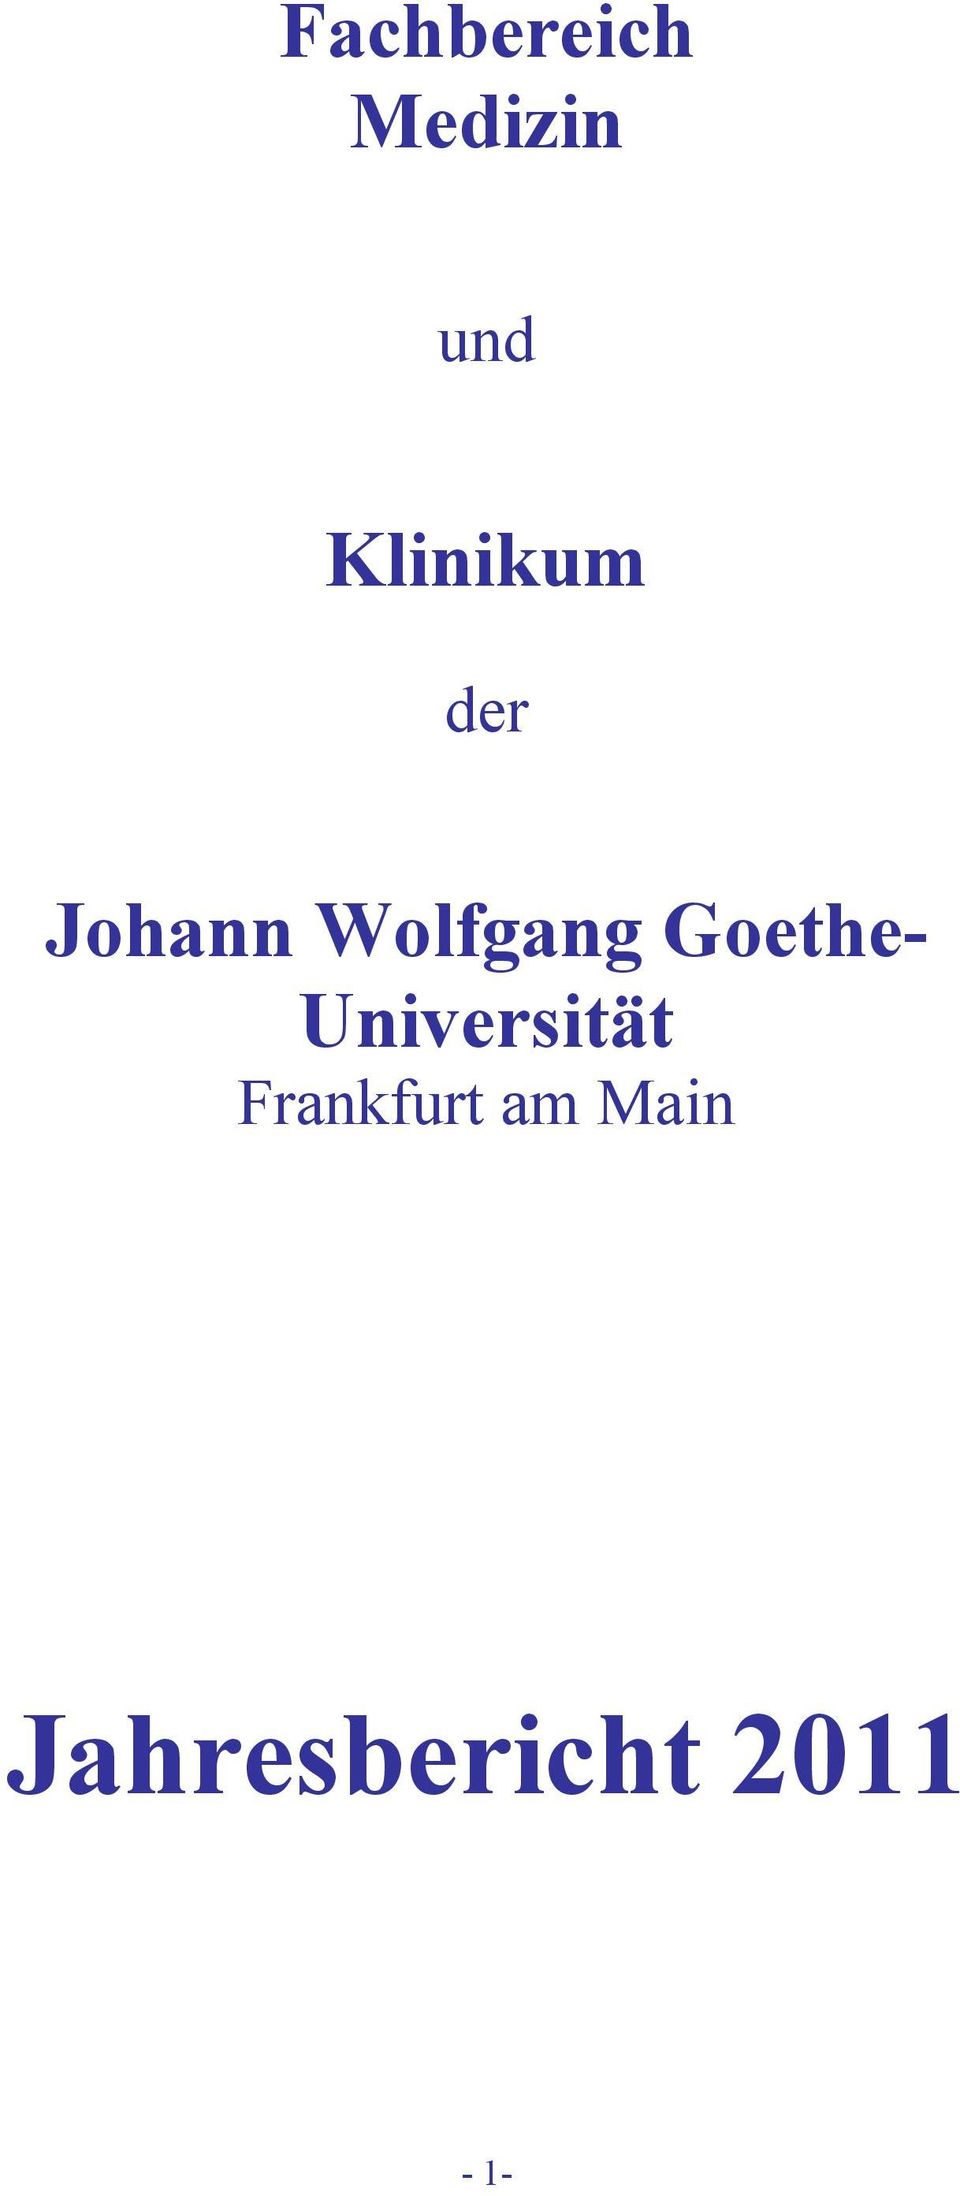 Wolfgang Goethe-